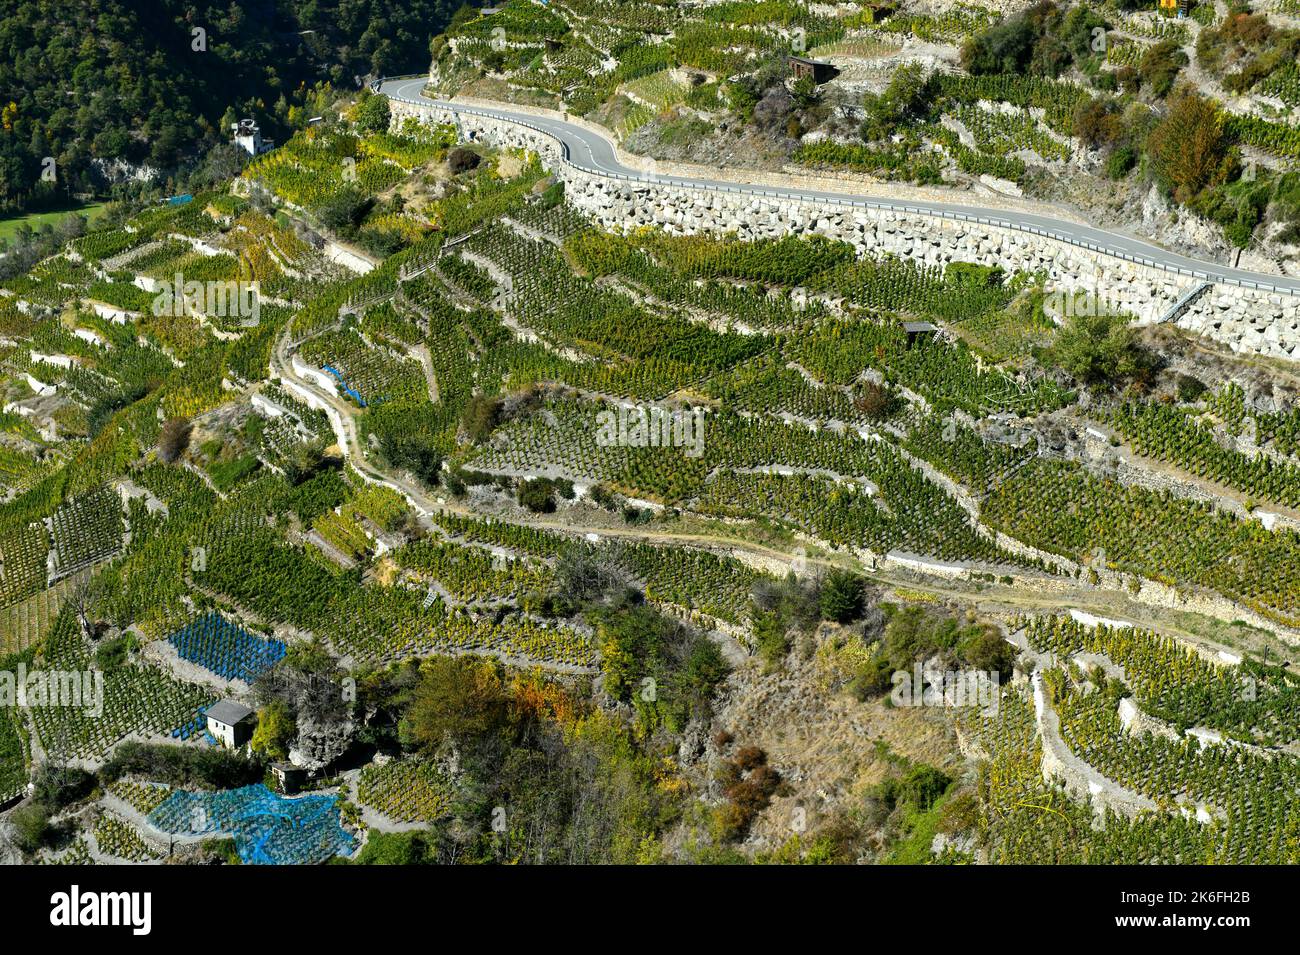 Parcelles à petite échelle sur le plus haut vignoble de Suisse, Bächij, Heidadorf Visperterminen, Valais, Suisse Banque D'Images